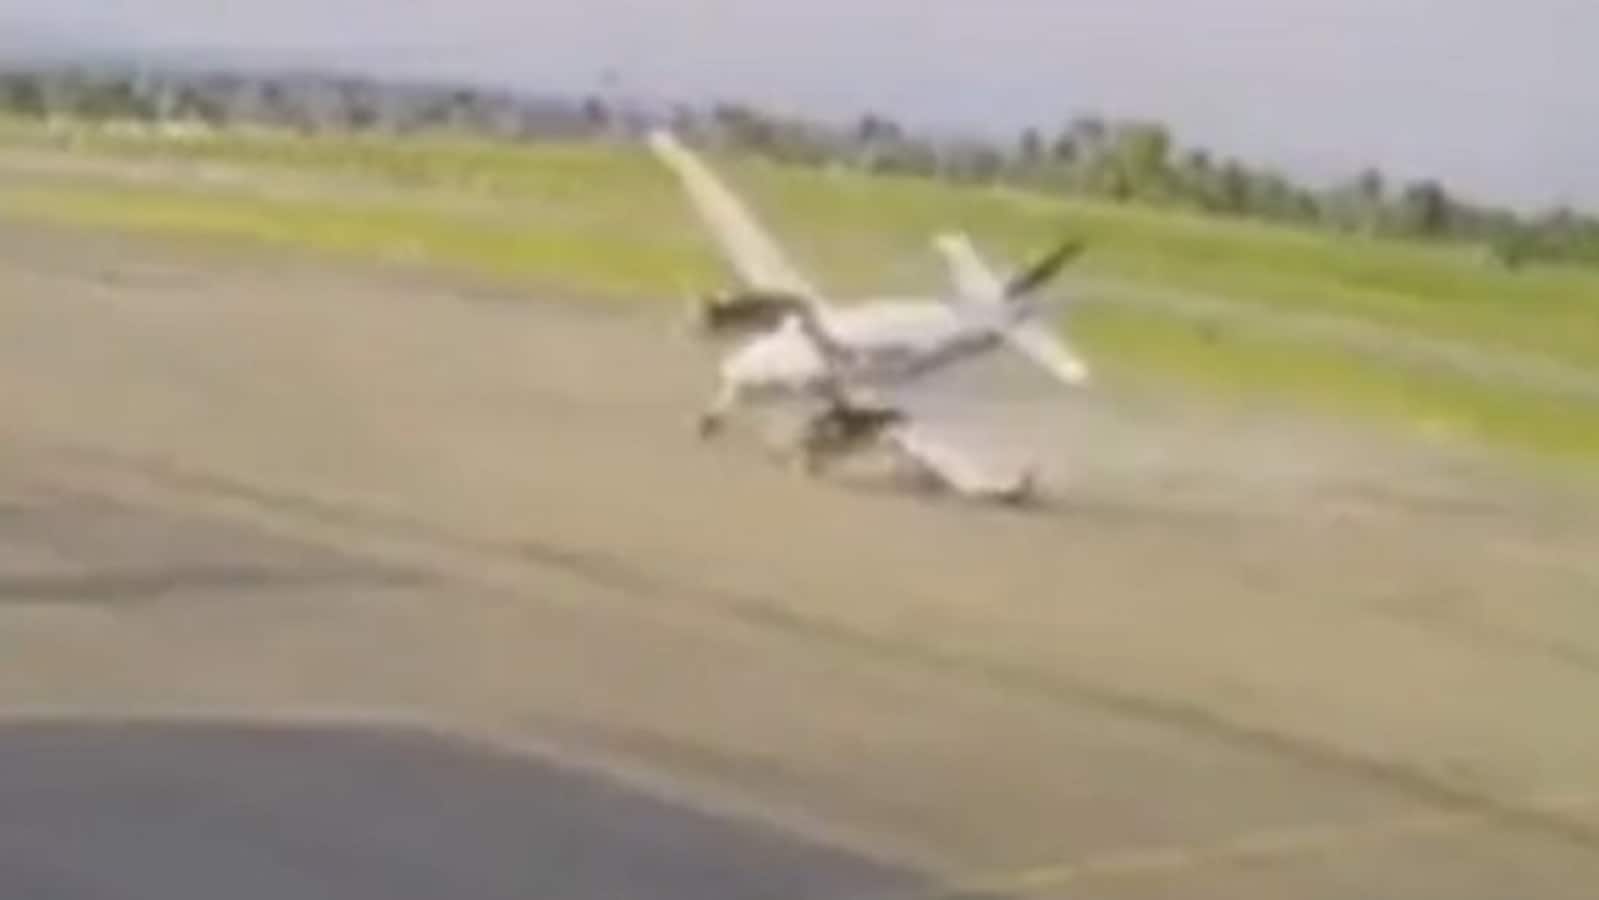 Watch video: Fiery plane crash that killed 2 in Brazil